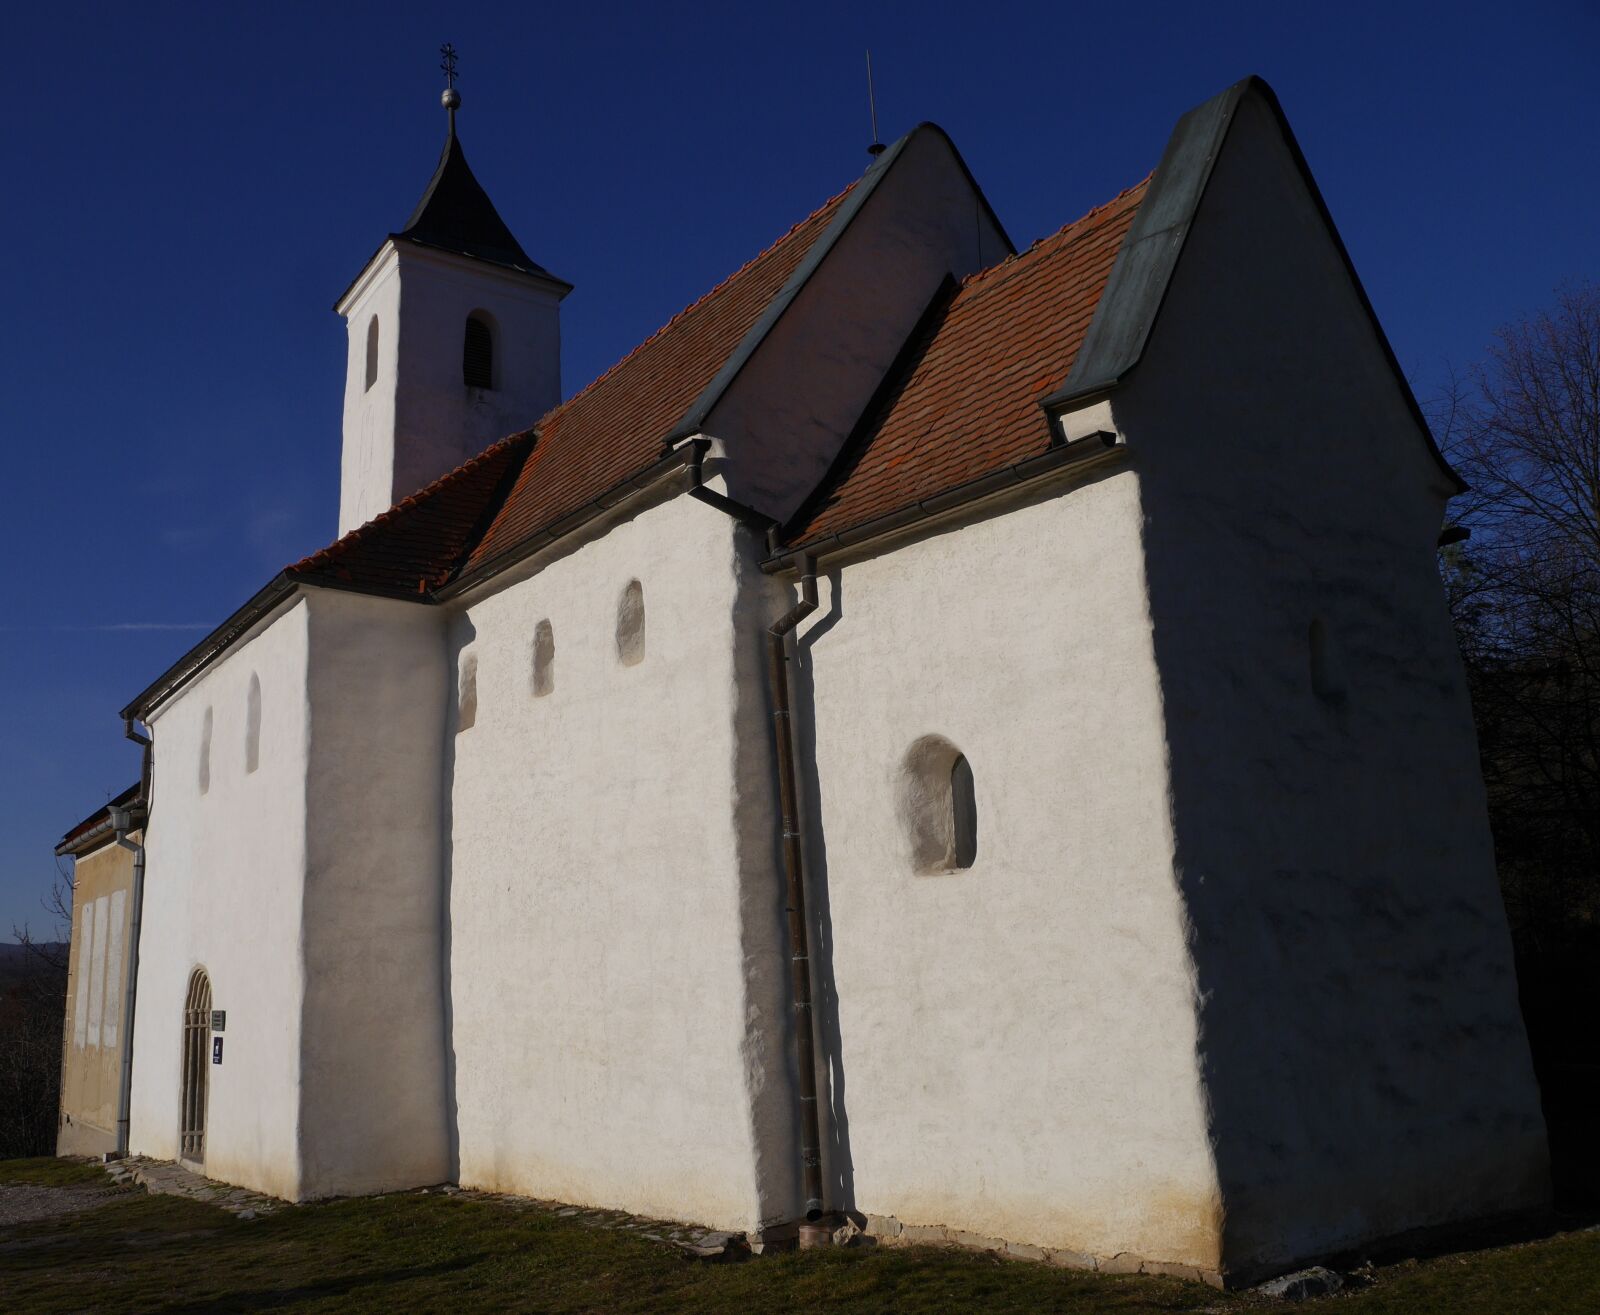 Panasonic Lumix DMC-G6 sample photo. Church, slovakia, history photography